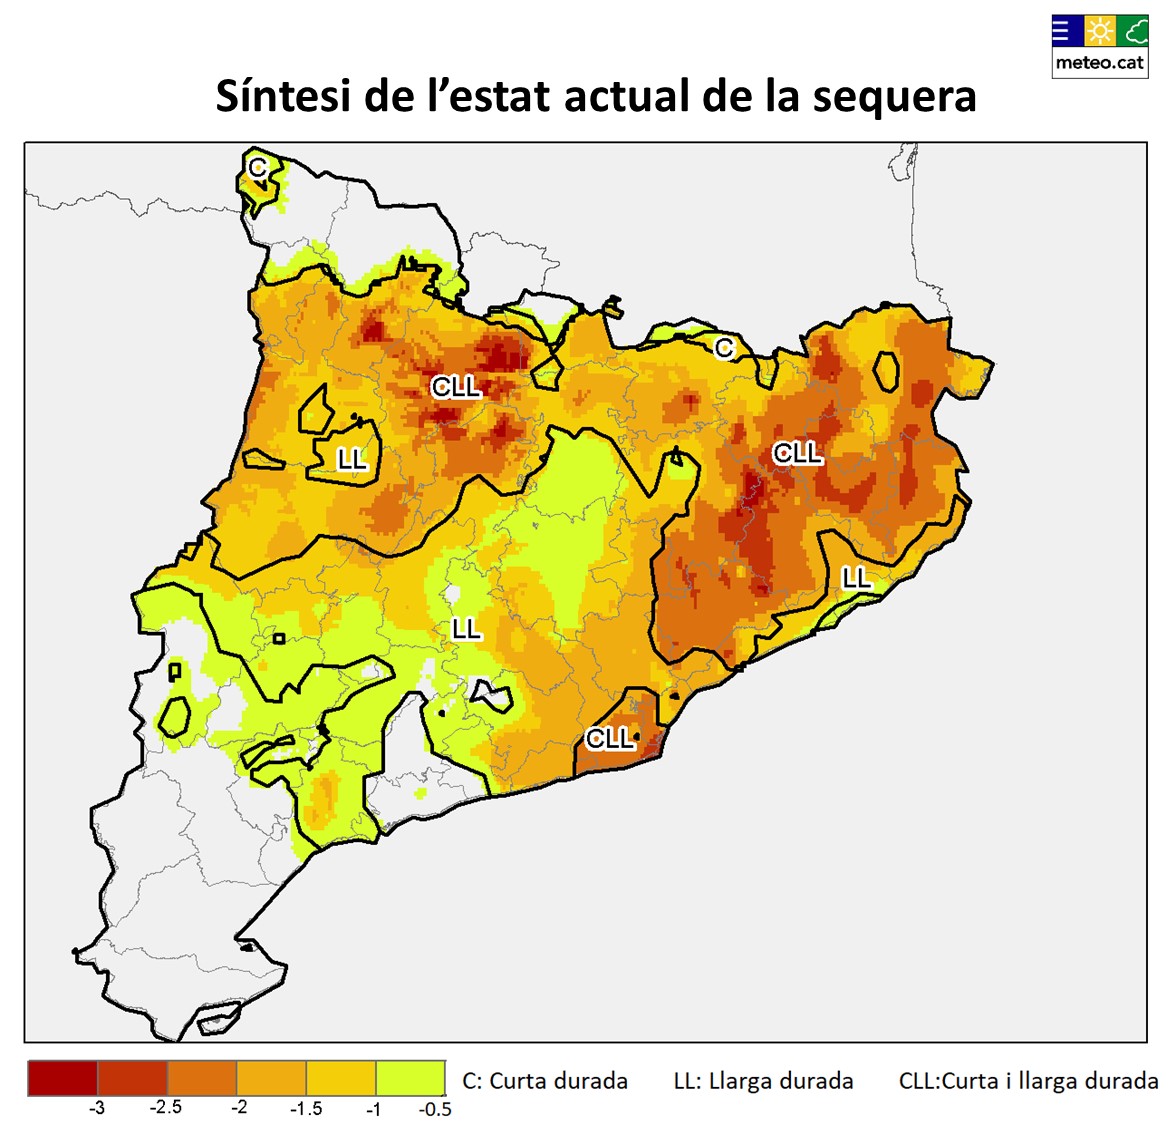 Figura 7. Síntesi de l’estat actual de la sequera a Catalunya a partir de l’estima de les condicions de dèficit hídric a curt (3 i 6 mesos) i llarg termini (12 i 24 mesos).